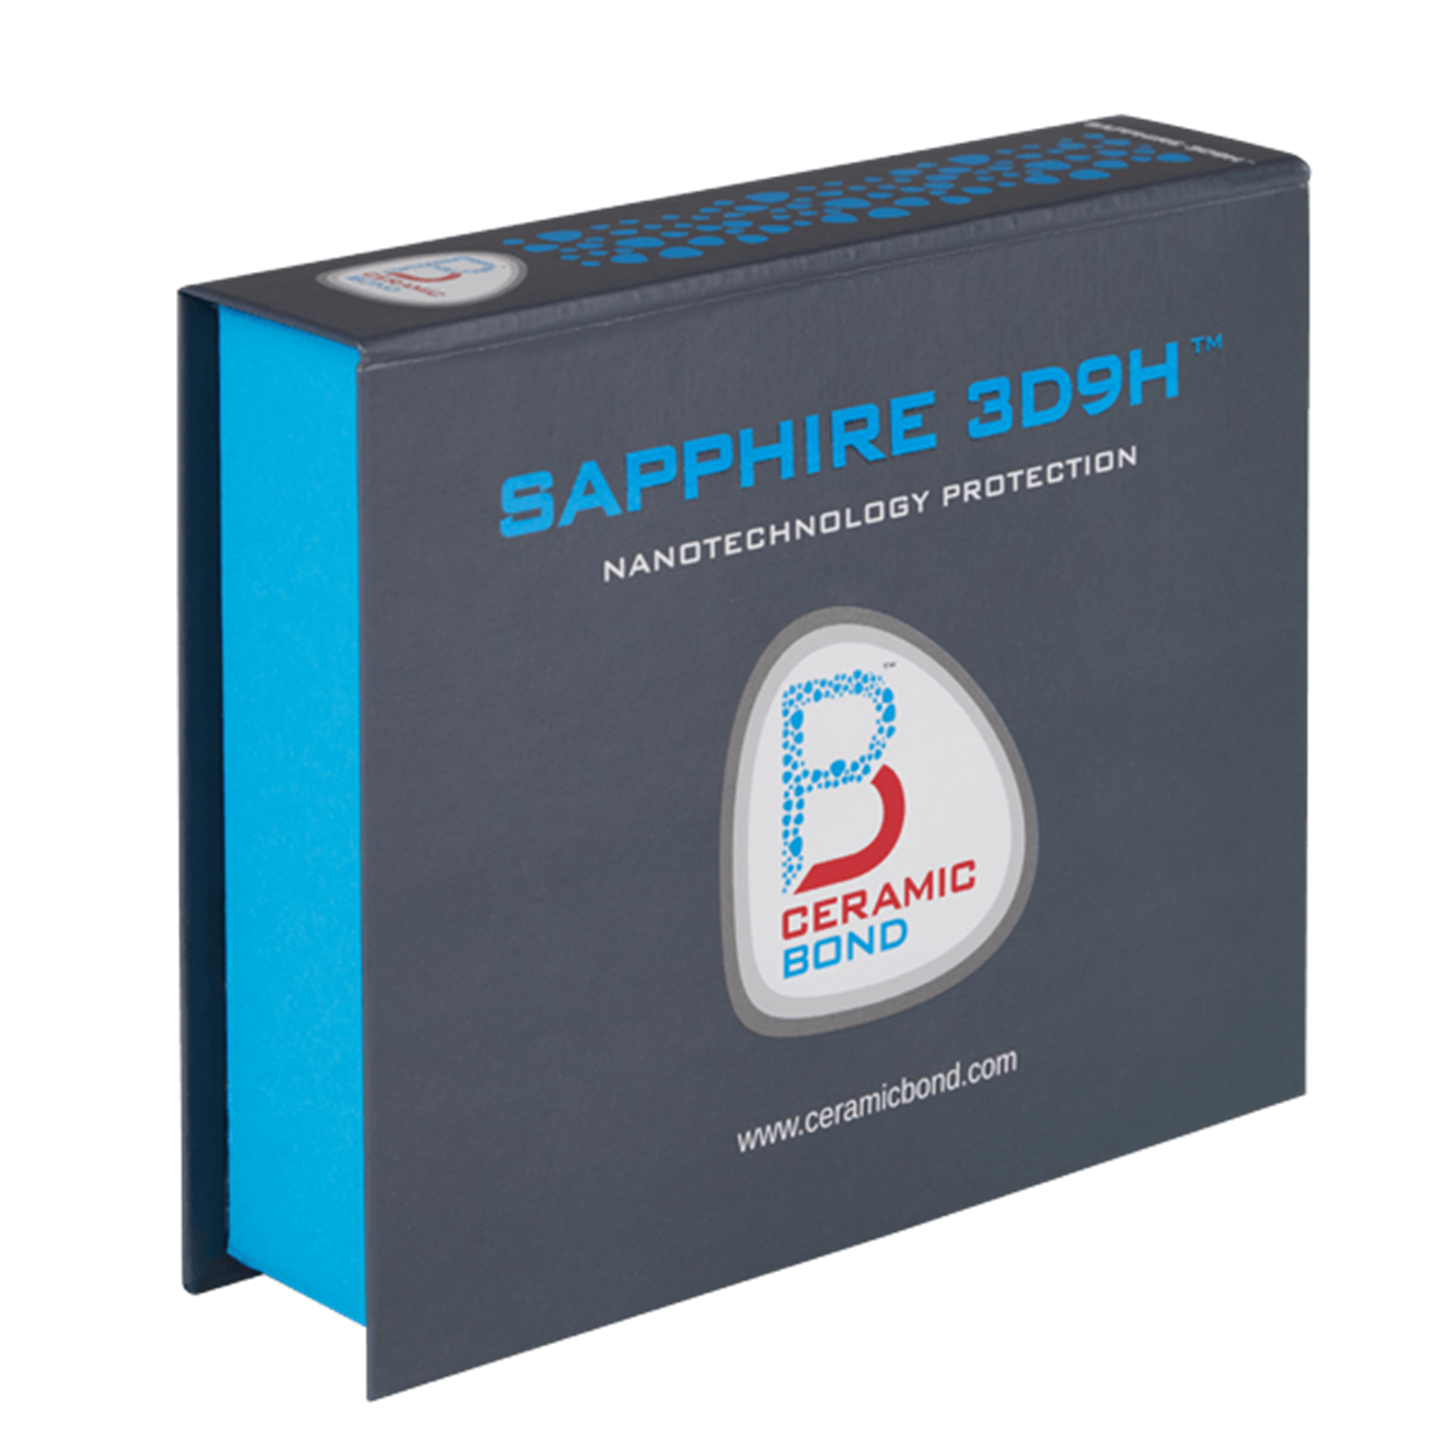 SAPPHIRE 3D9H-NF (New Formula) 